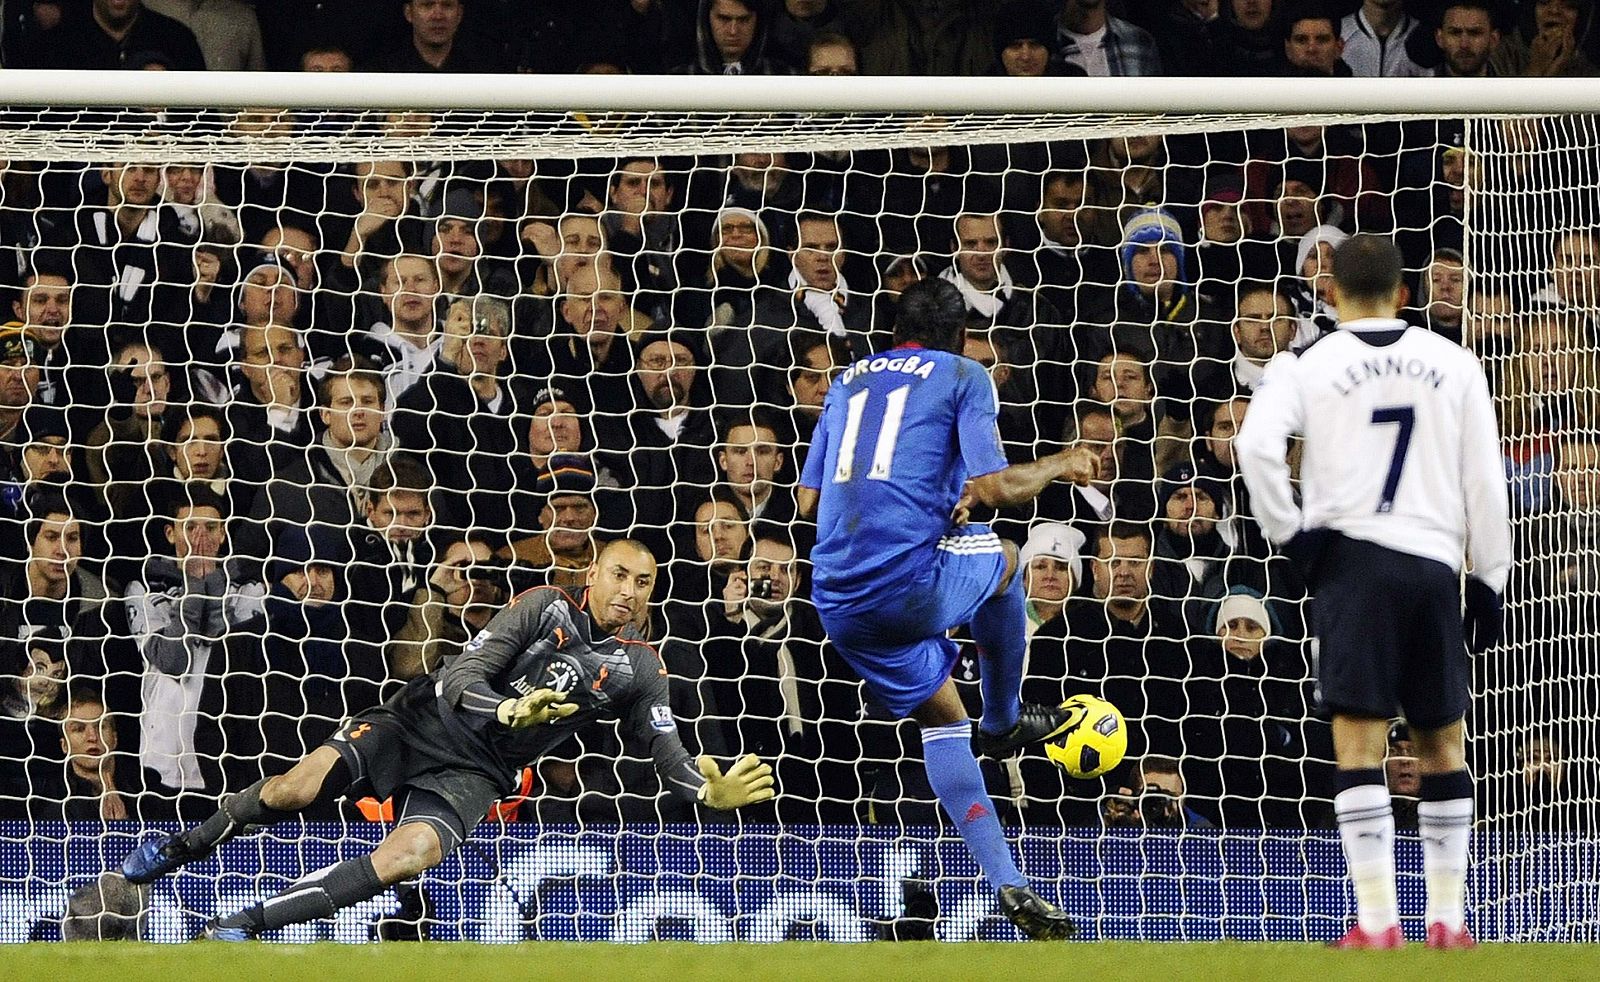 El meta de Tottenham, Gomez, detuvo un penalti a Drogba que podía haber sido la victoria del Chelsea.